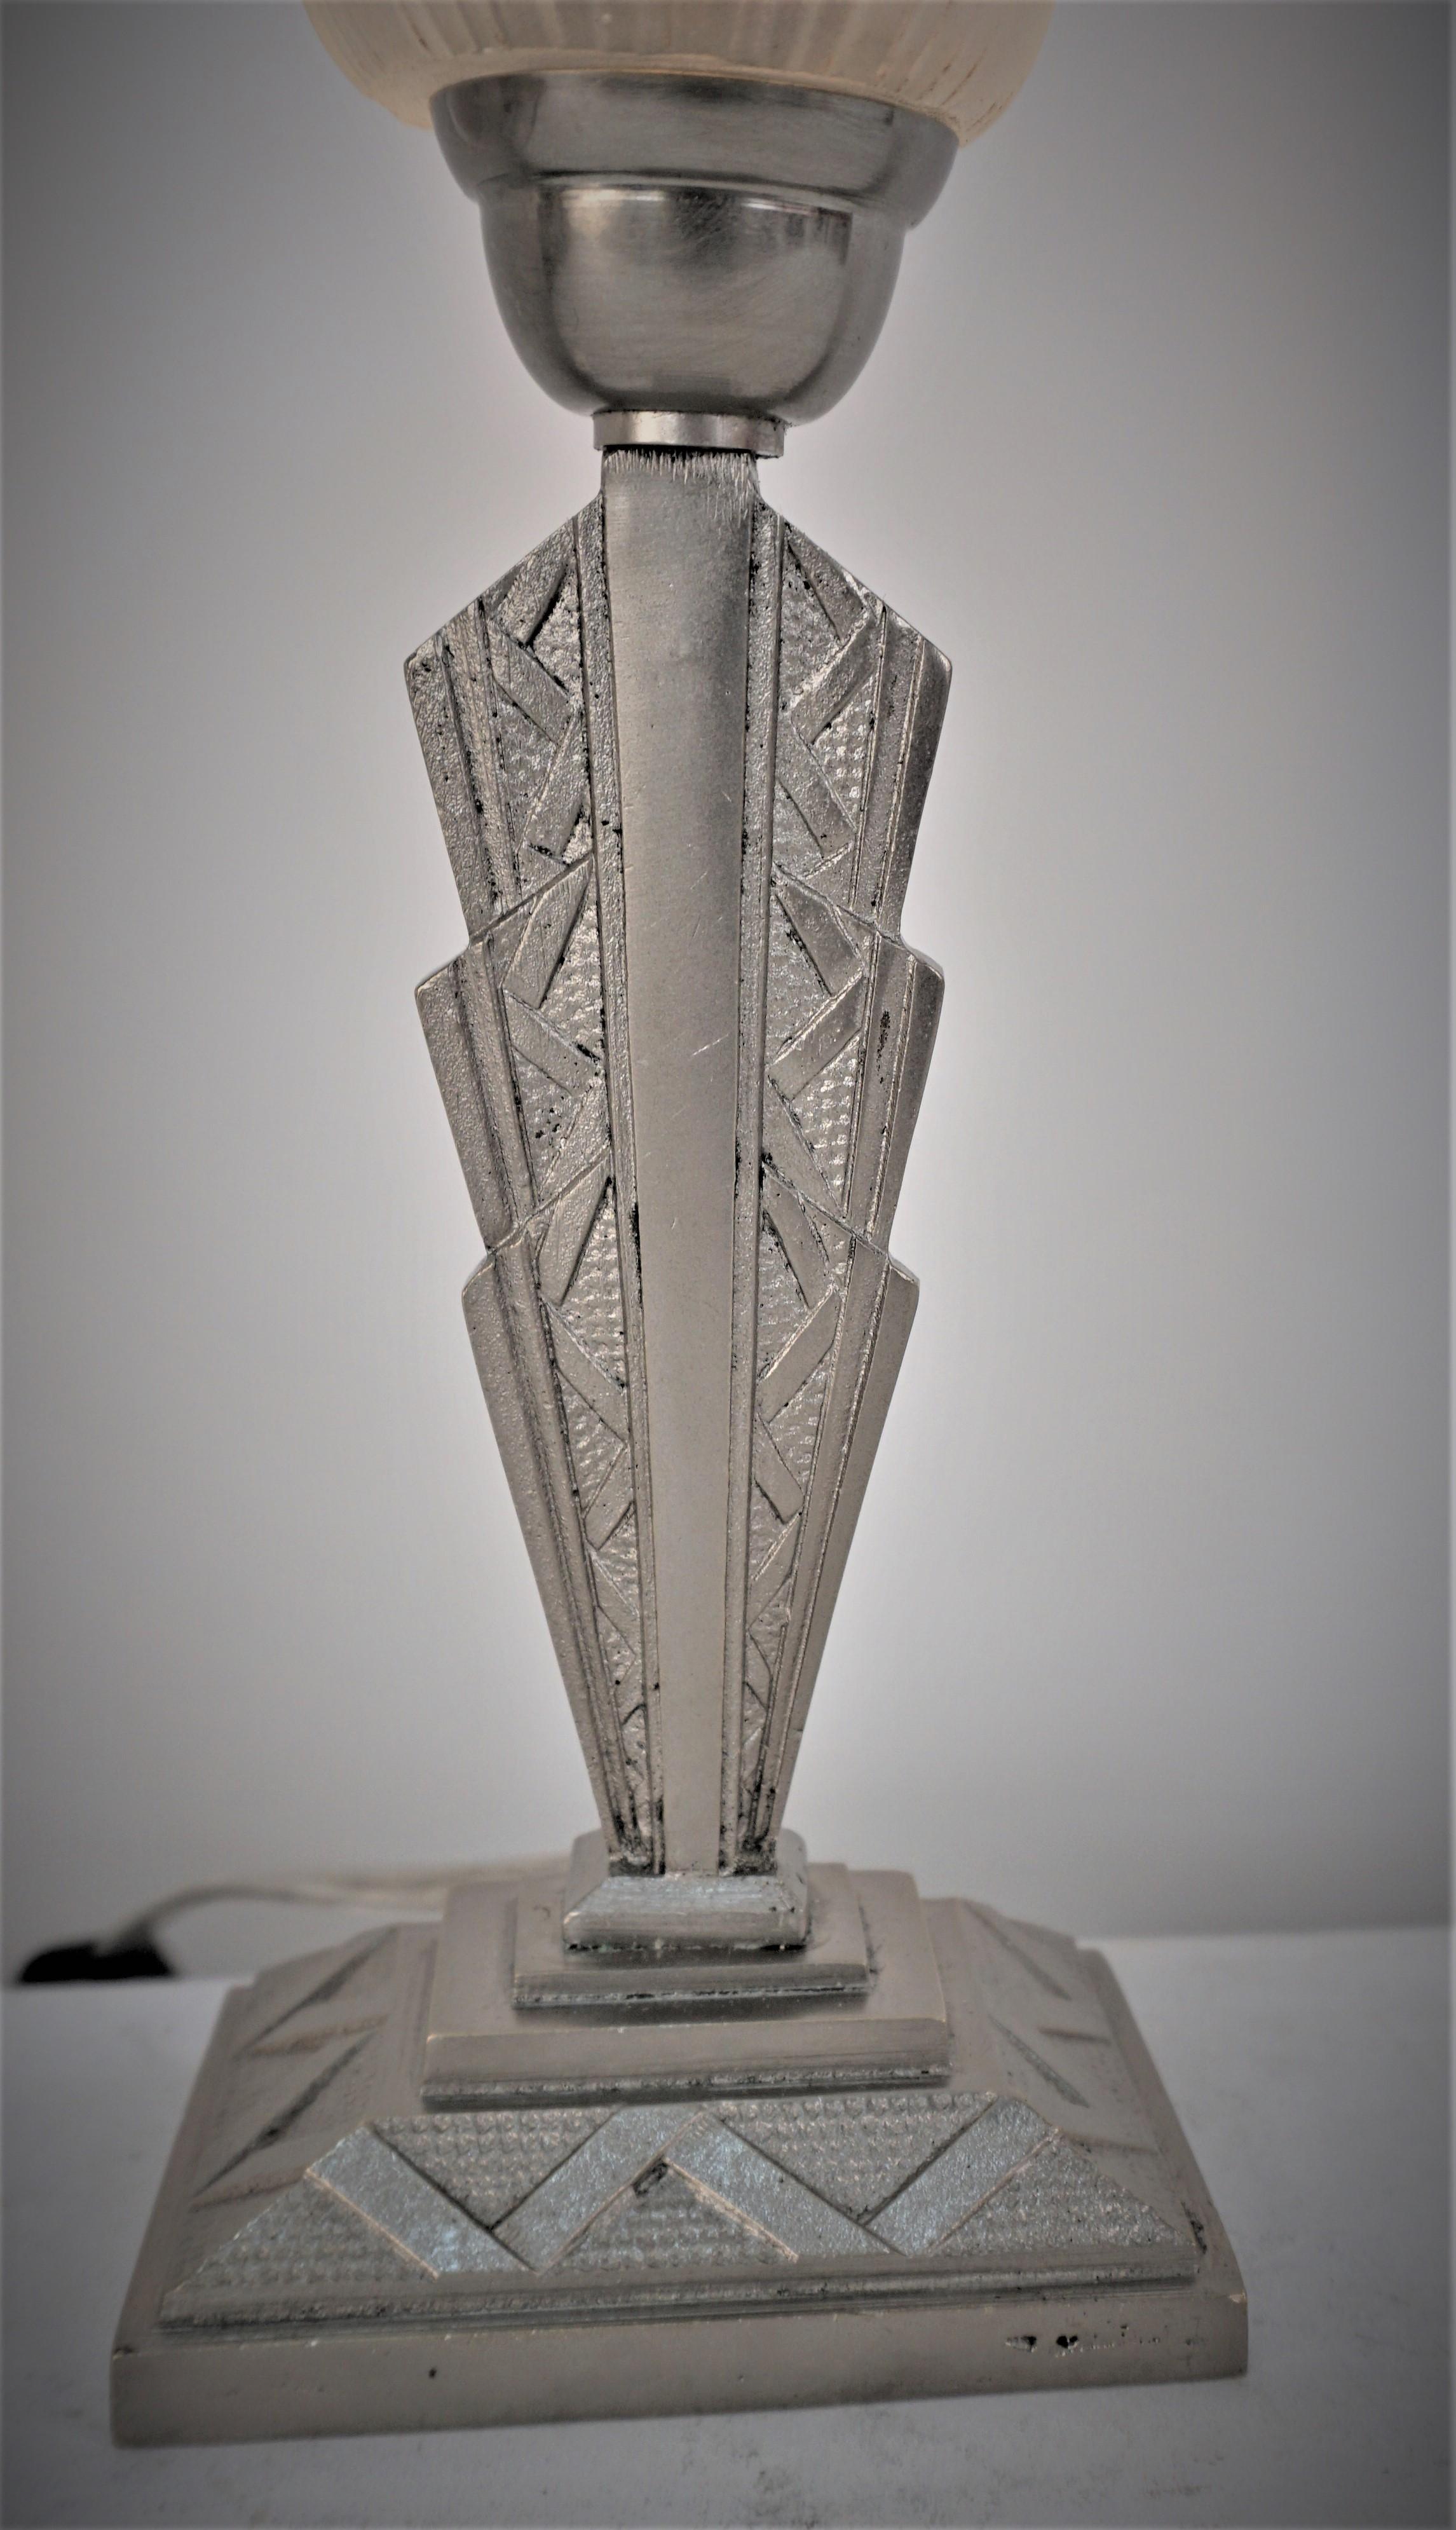 Diseño geométrico de cristal transparente escarchado, lámpara de sobremesa de níquel sobre base oblonga de bronce.
Recableado profesional, bombilla con casquillo E12. 